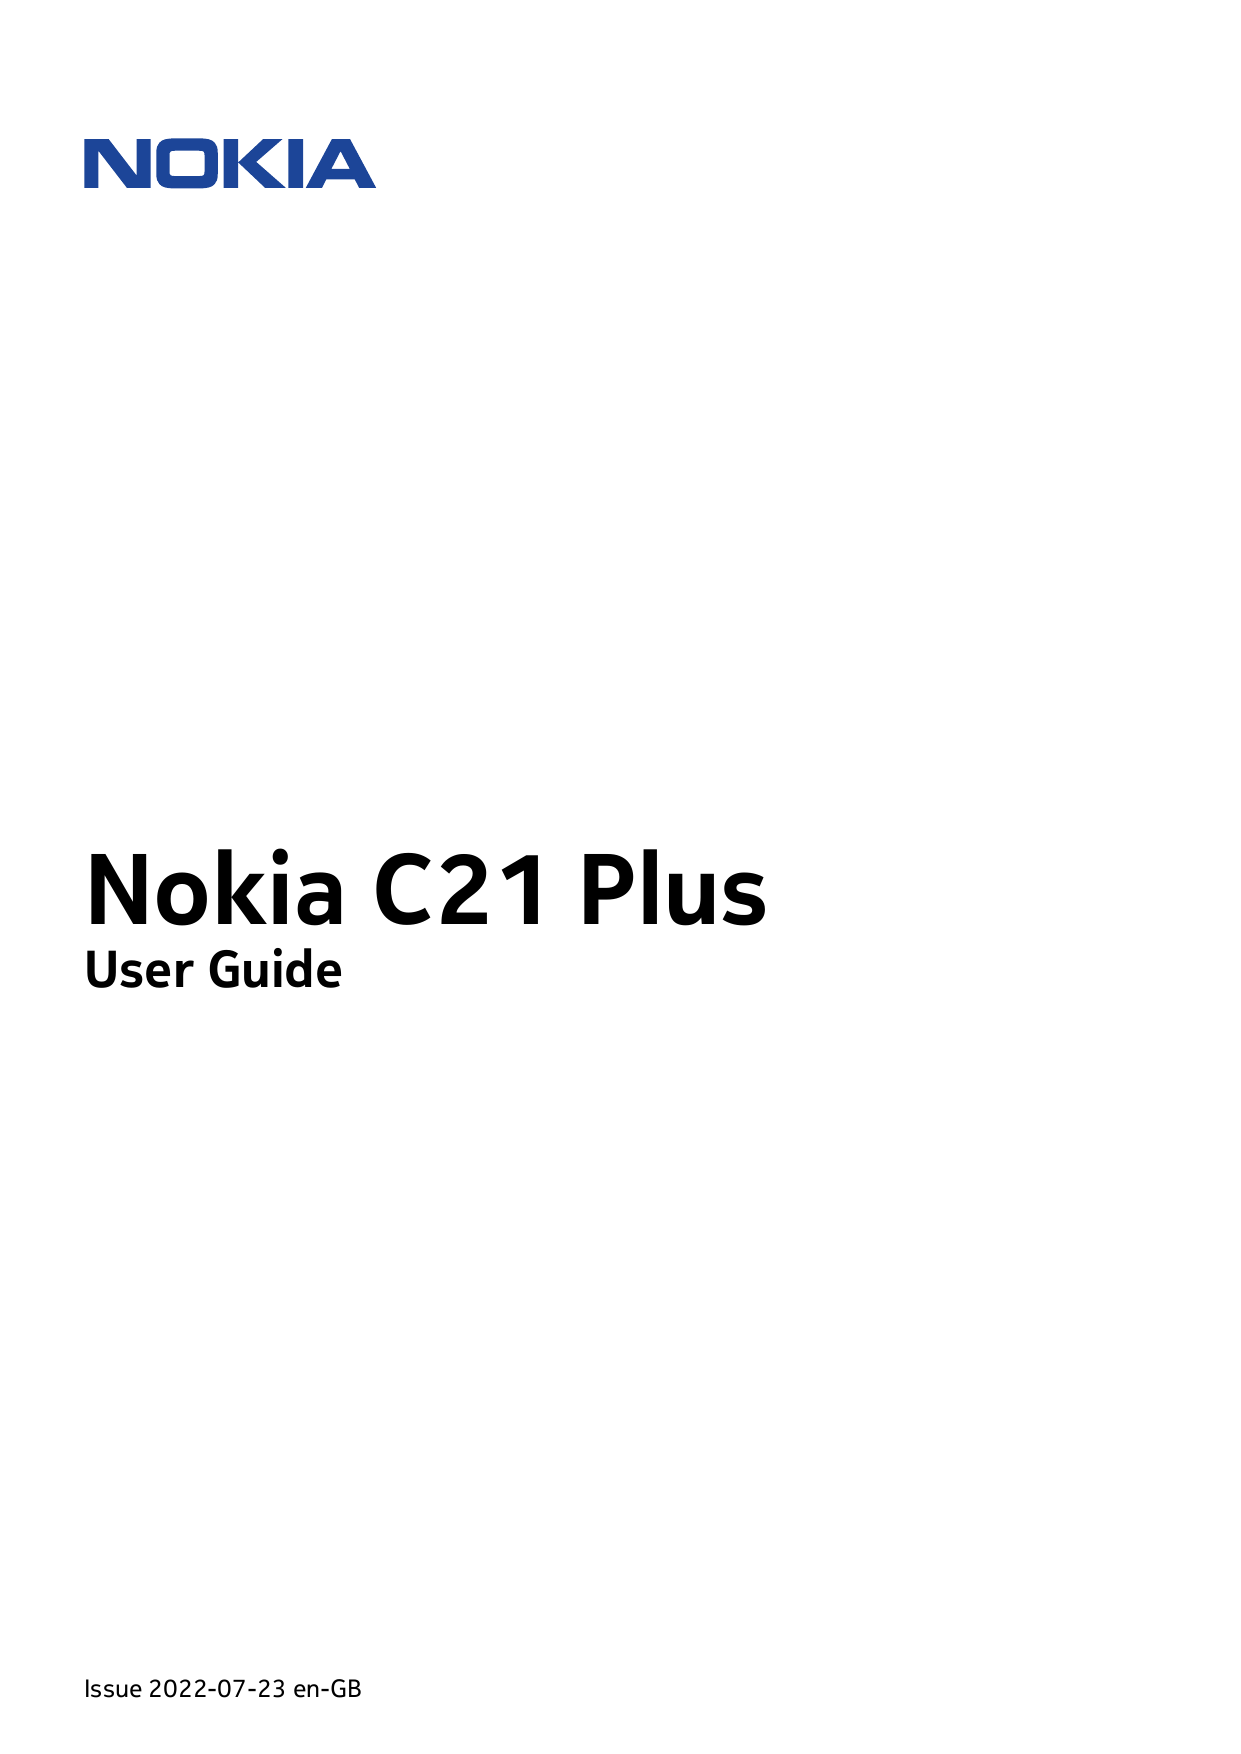 Nokia C21 PlusUser GuideIssue 2022-07-23 en-GB